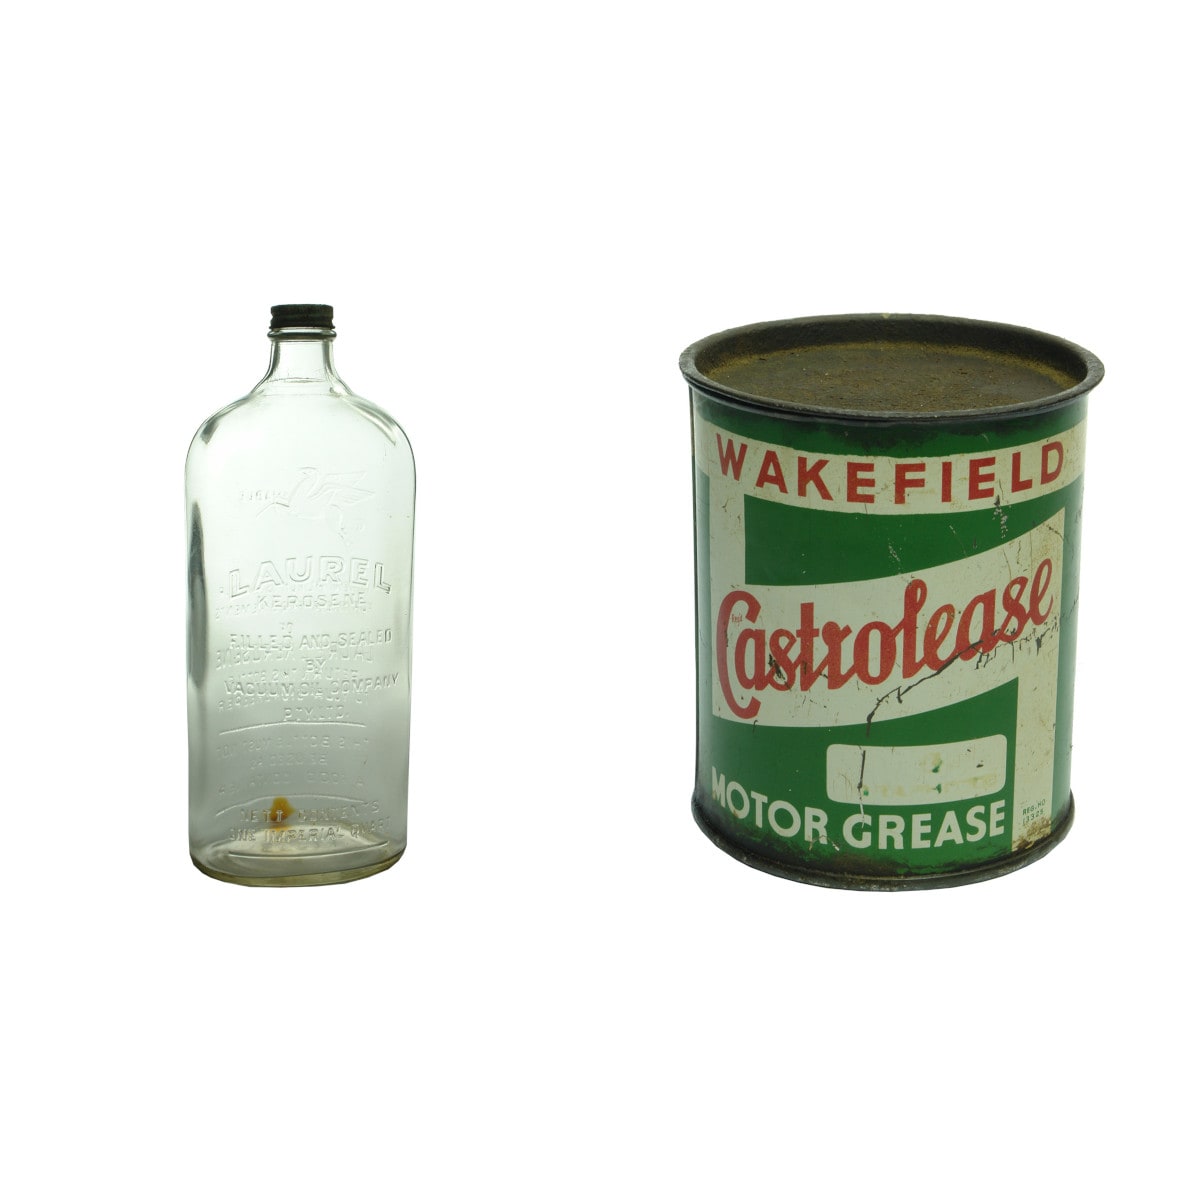 Garaganalia. Laurel Kerosene, Quart Bottle and Wakefield Castrolease Grease tin.